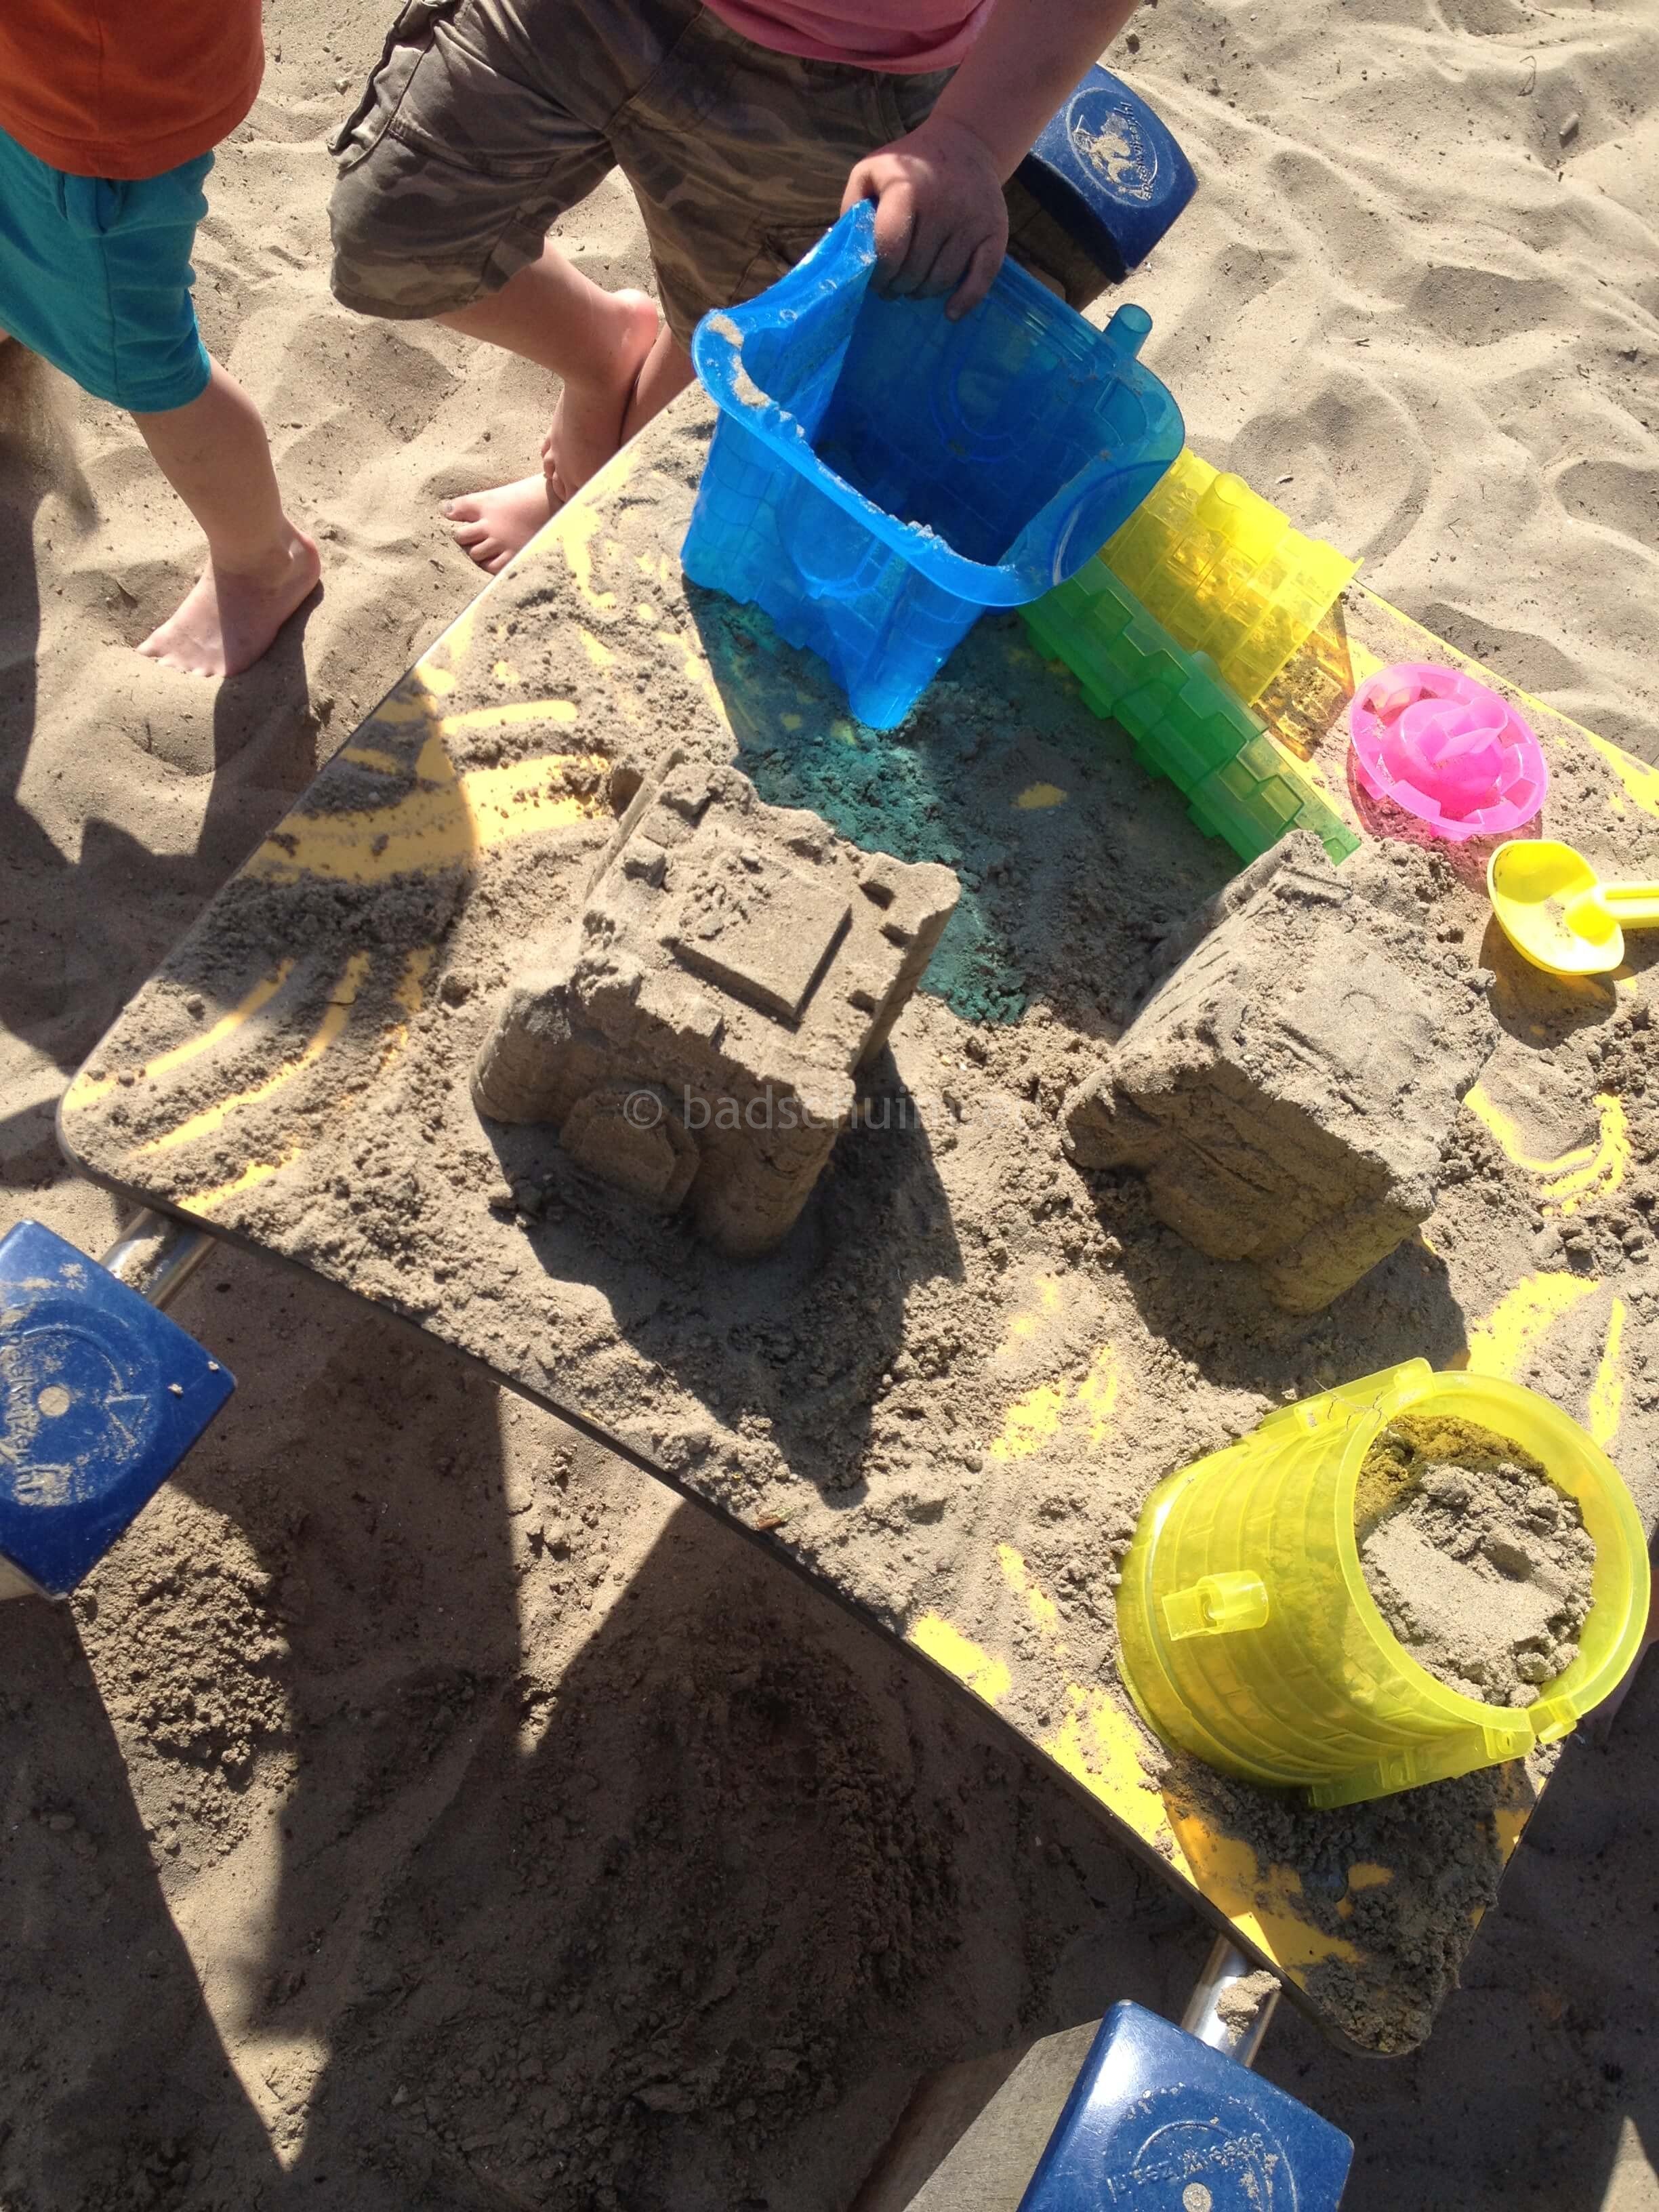 Zandkastelen bouwen I zand creatiesI Creatief lifestyle blog Badschuim